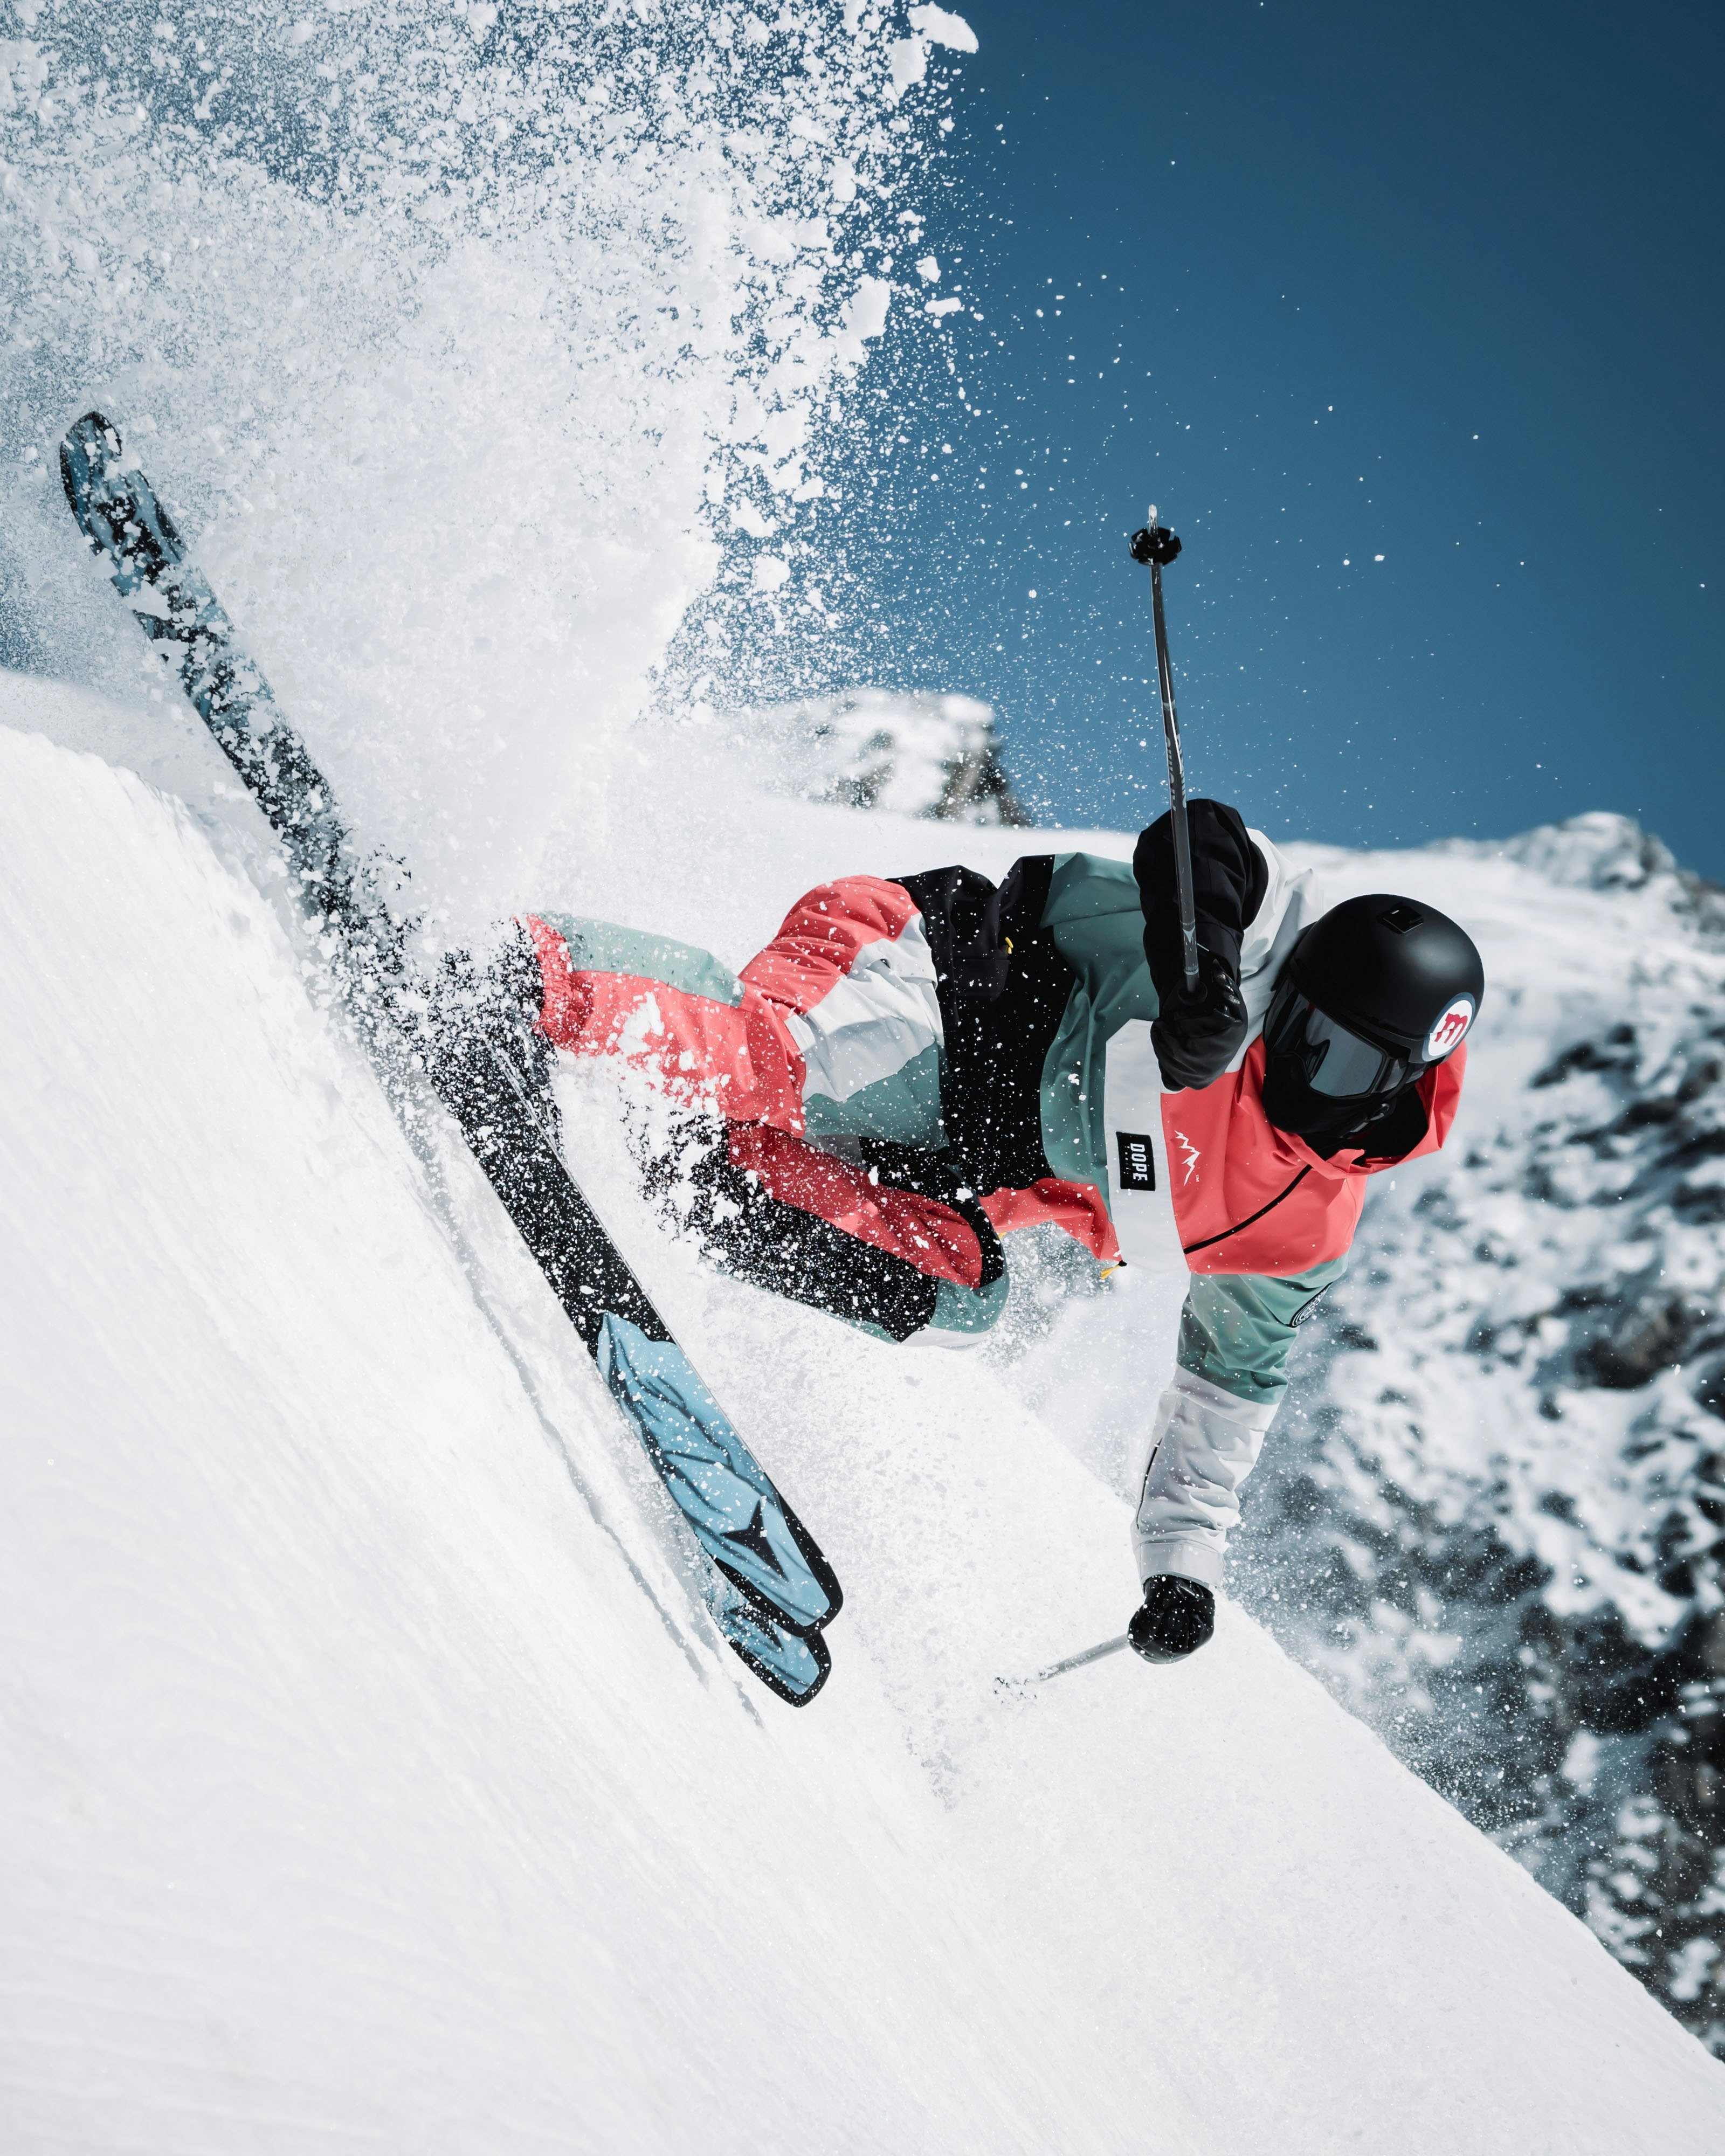 How to tune skis? | Ski Tuning Guide | Ridestore Magazine